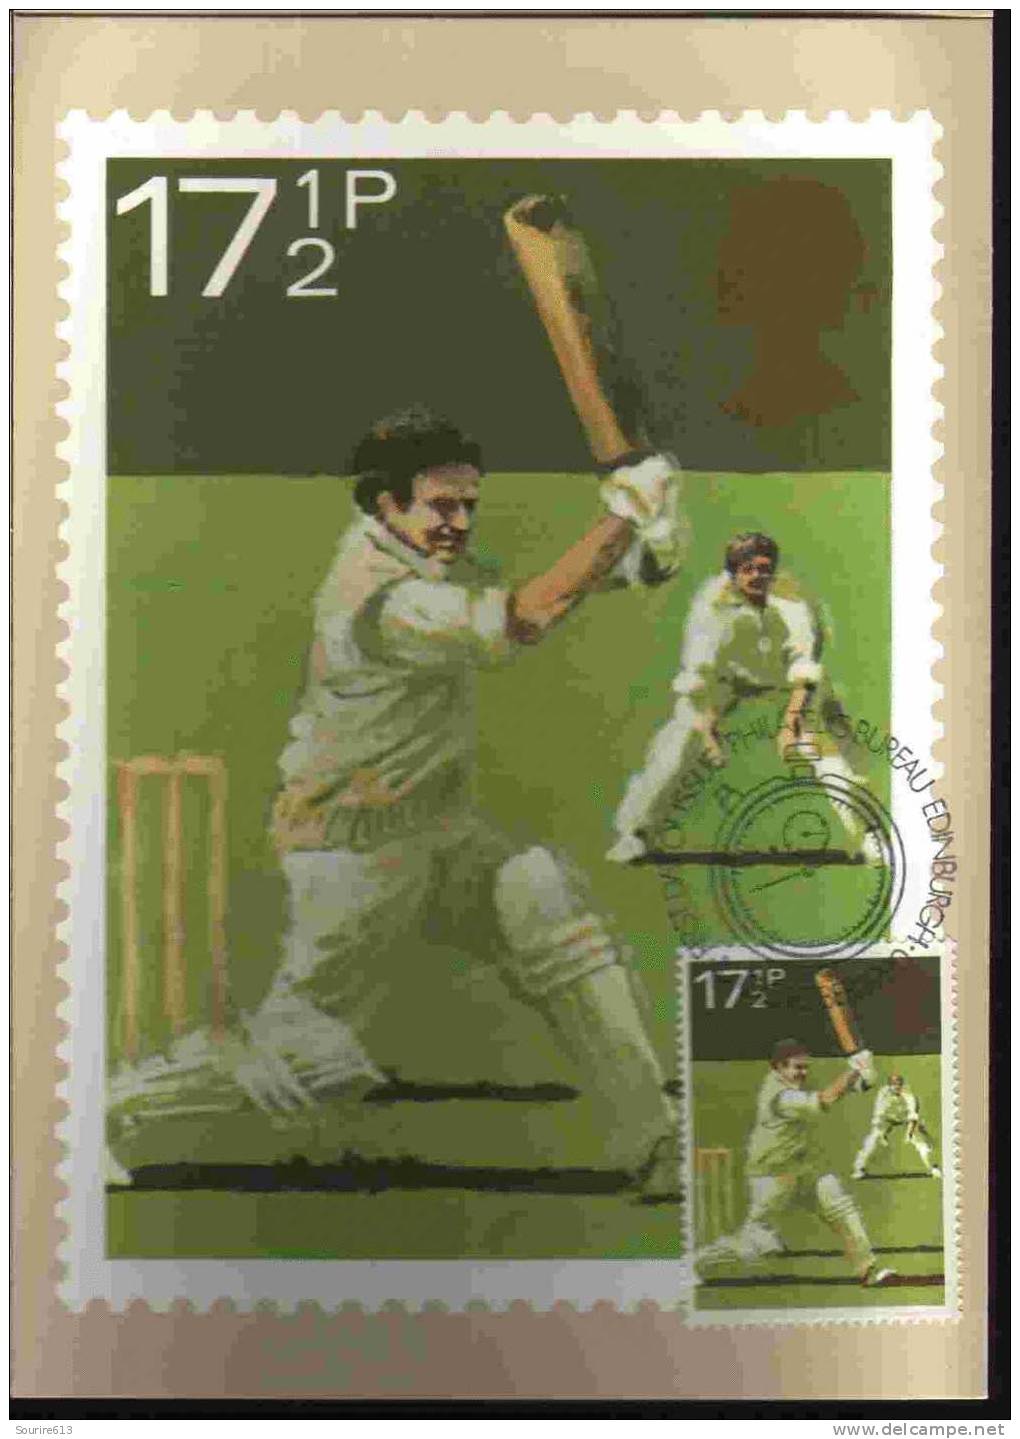 CPJ Gb 1980 Cricket - Cricket